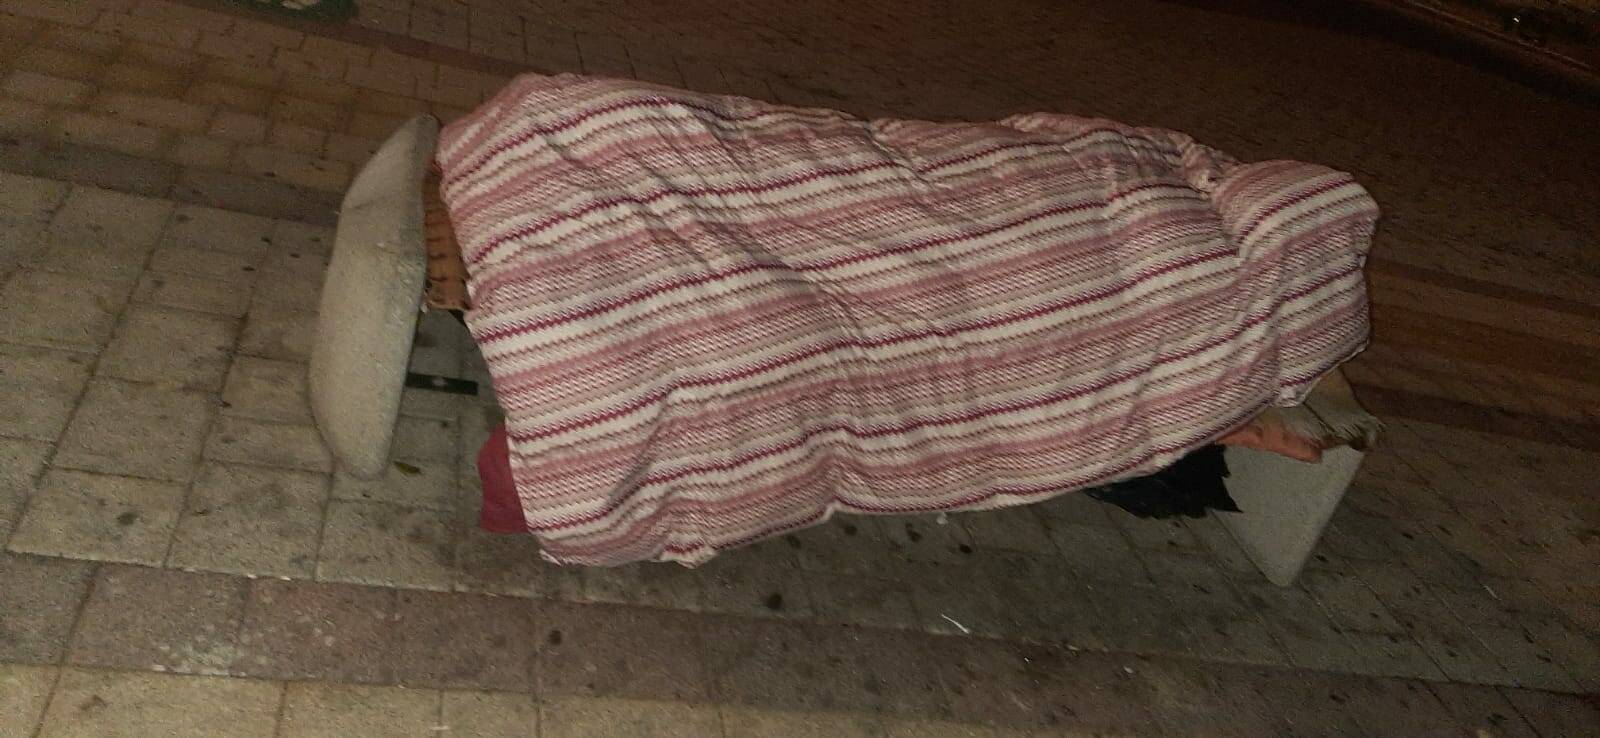 “Buttate le coperte e i sacchi a pelo dei senzatetto in stazione”